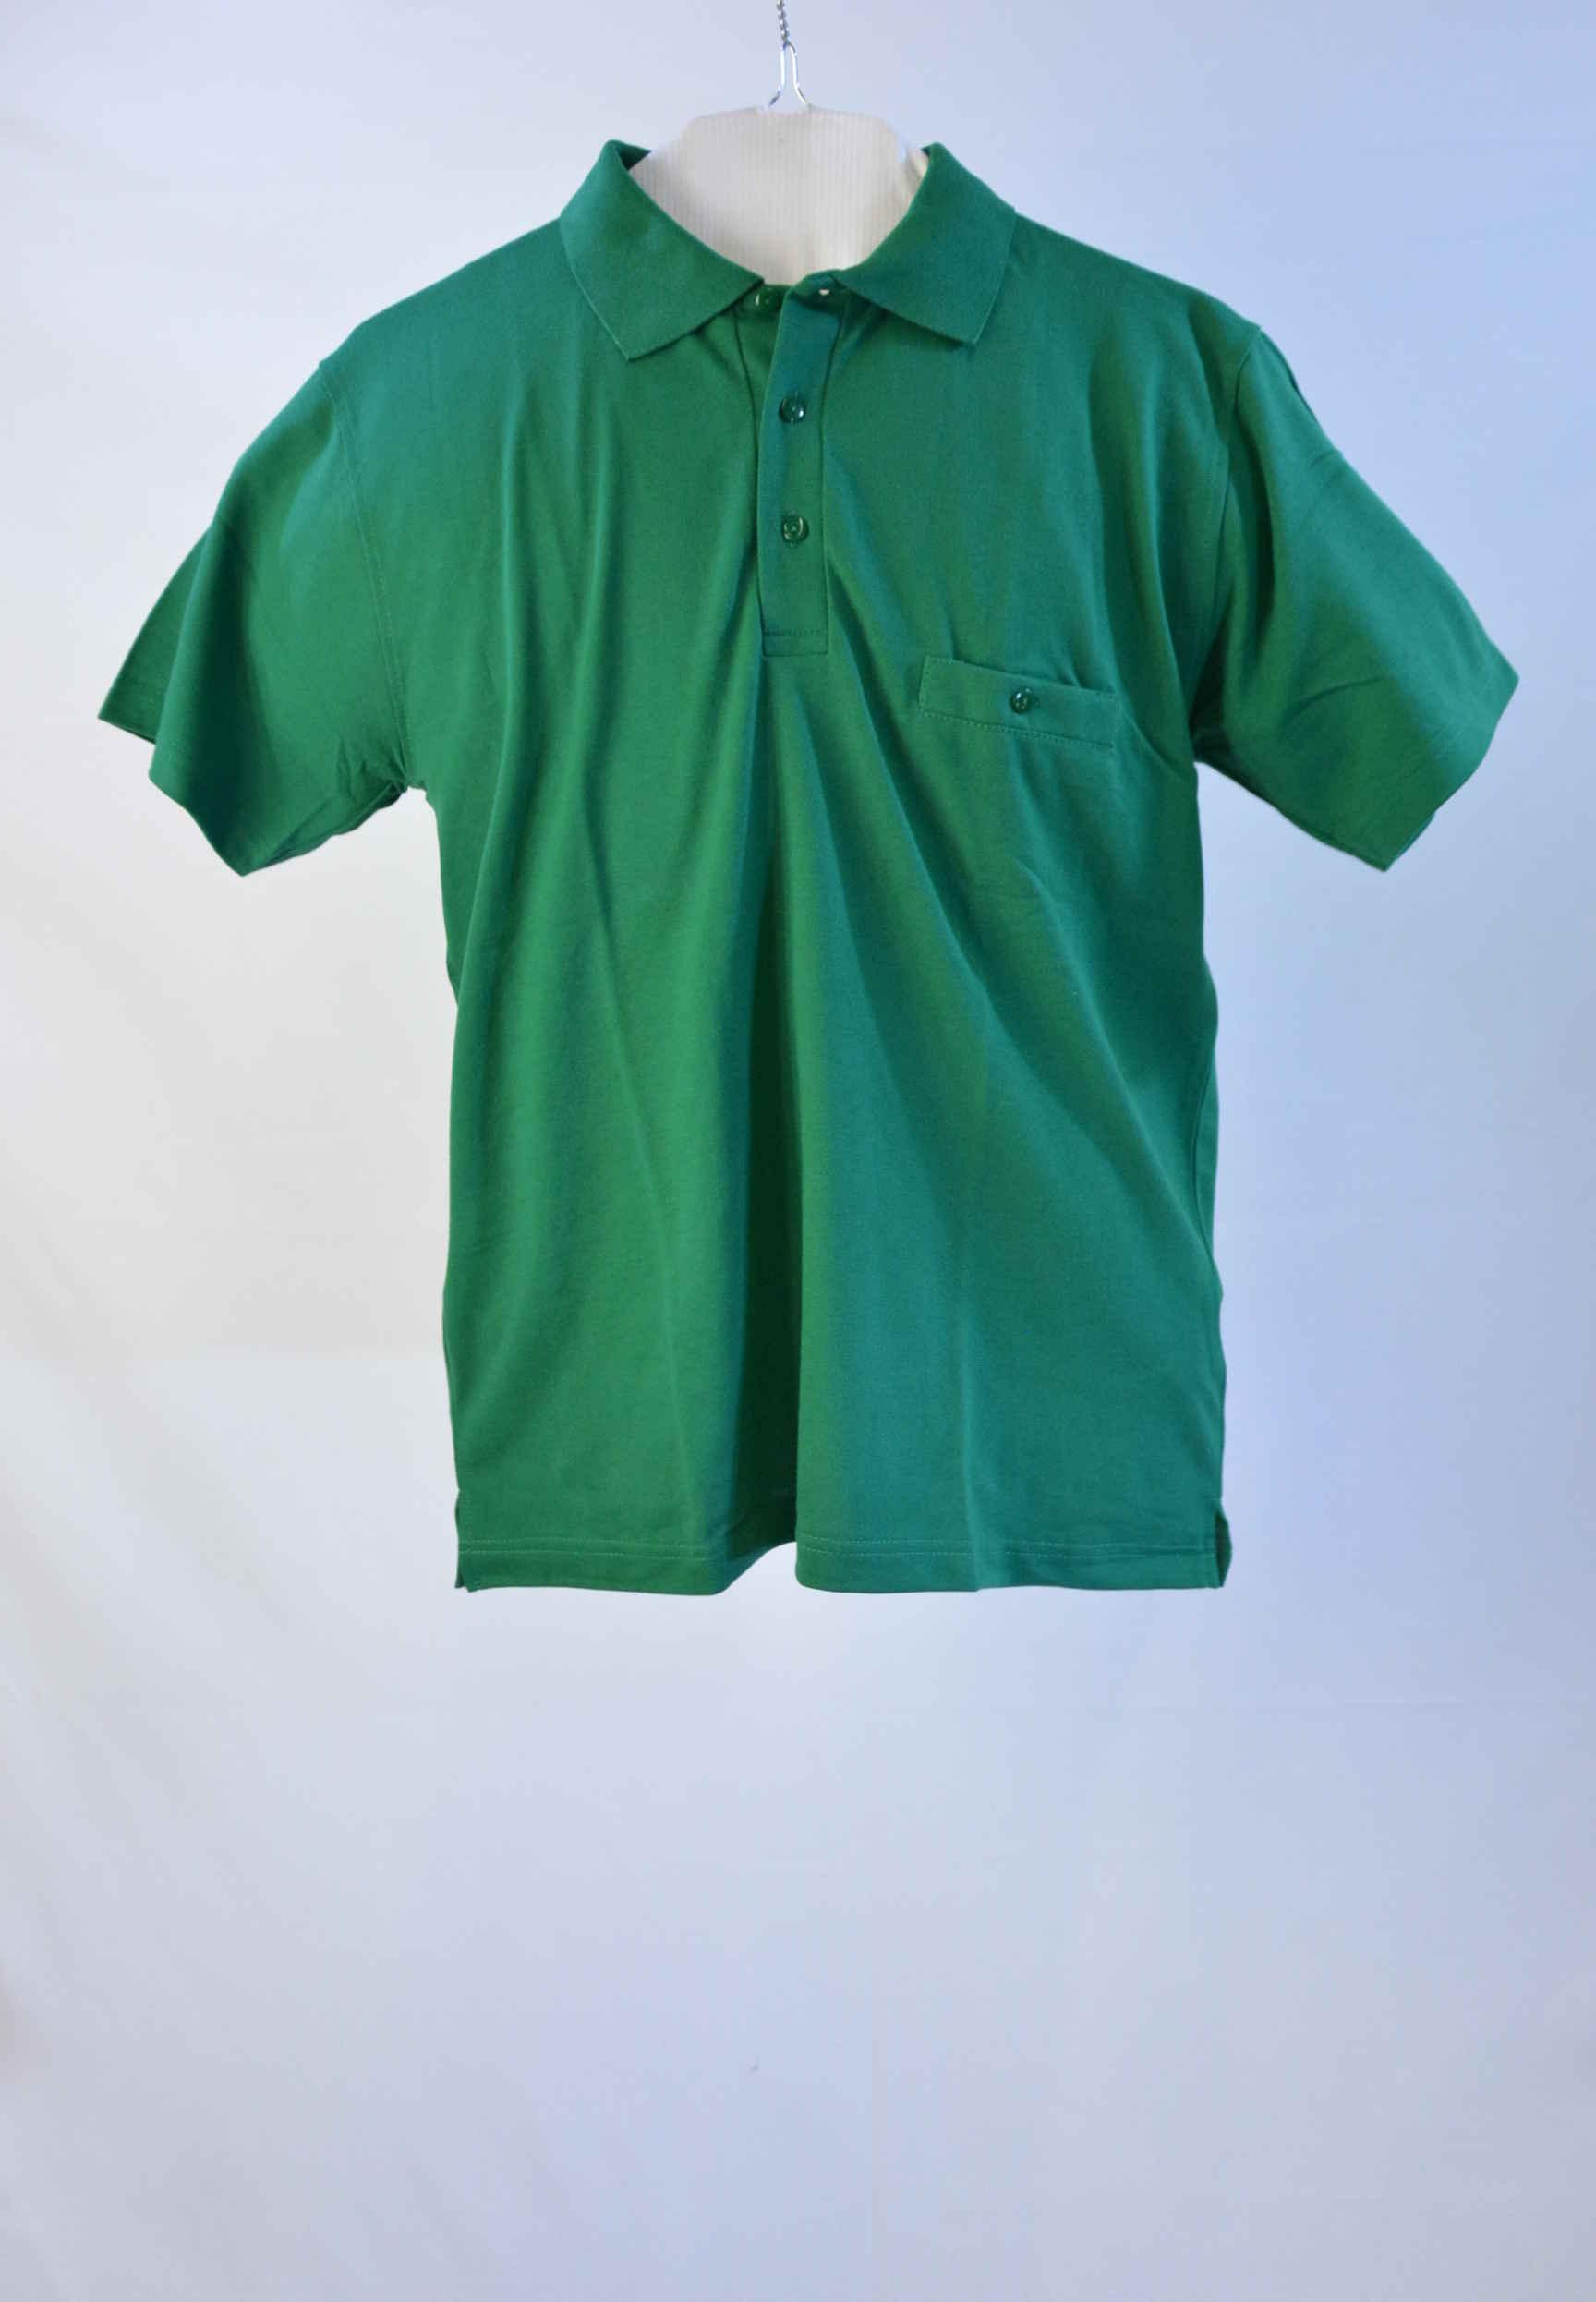 Poloshirt in grün für Sie & Ihn mit verschließbarer Brusttasche